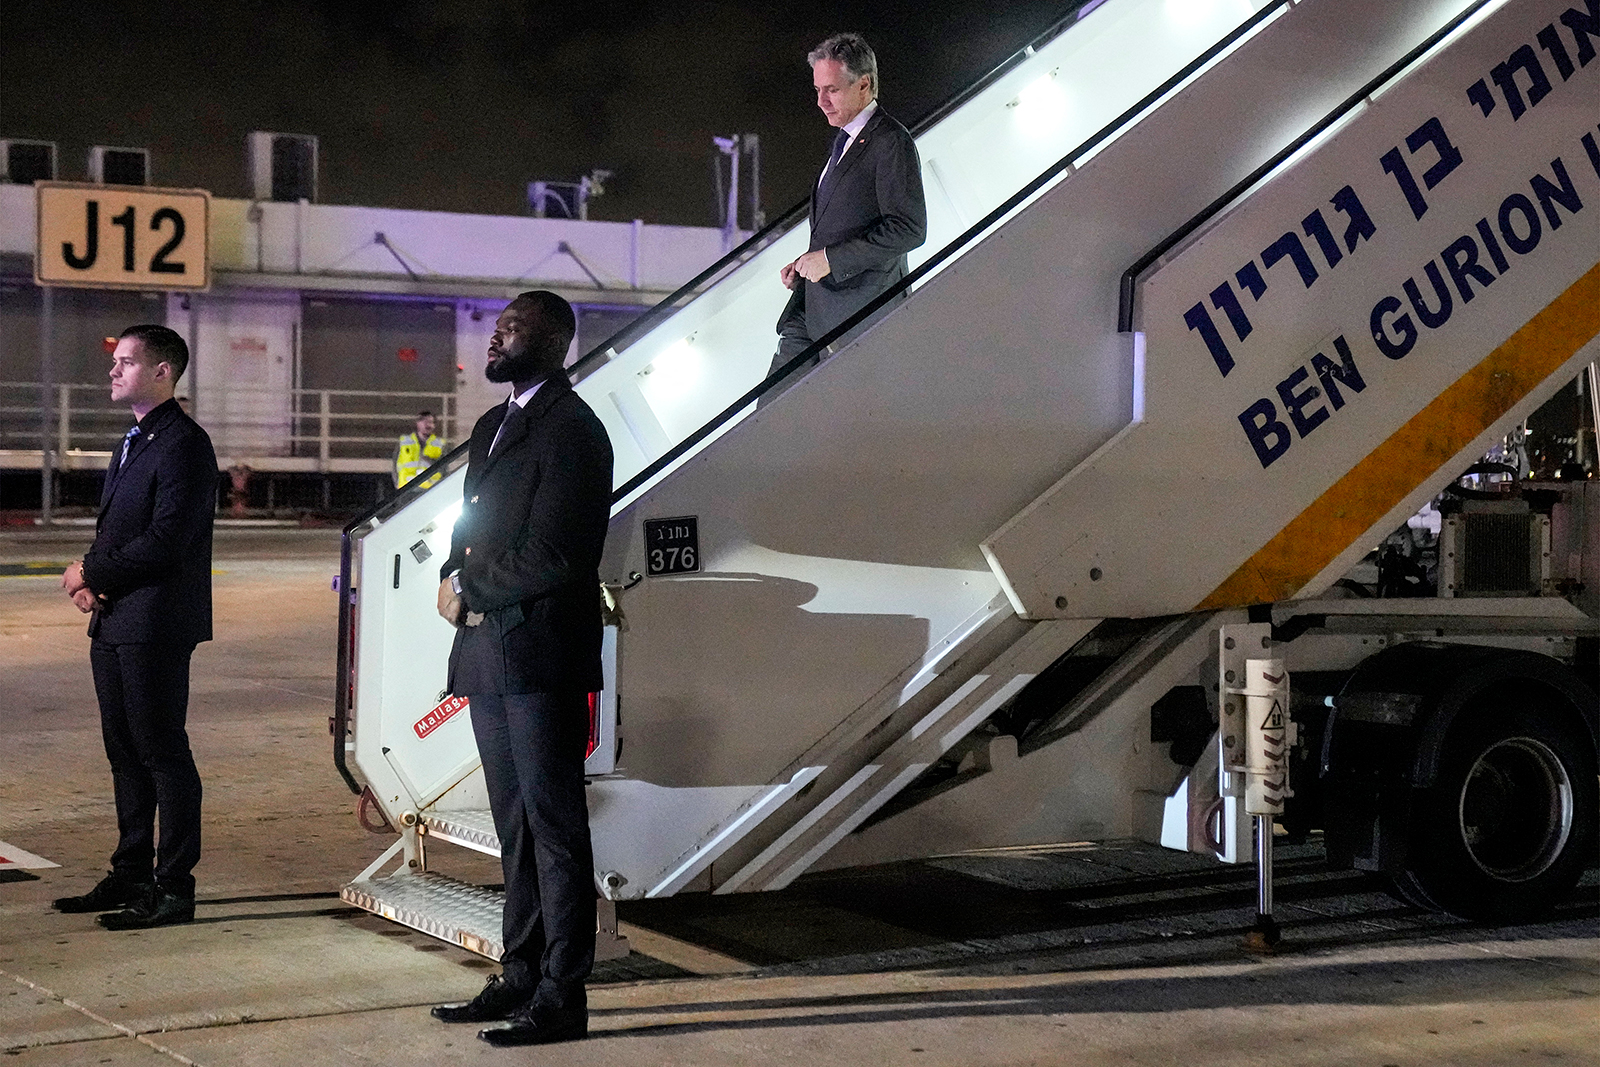 מזכיר המדינה האמריקני אנטוני בלינקן יורד ממטוסו עם הגעתו לנמל התעופה בן גוריון, תל אביב, ב-6 בפברואר.